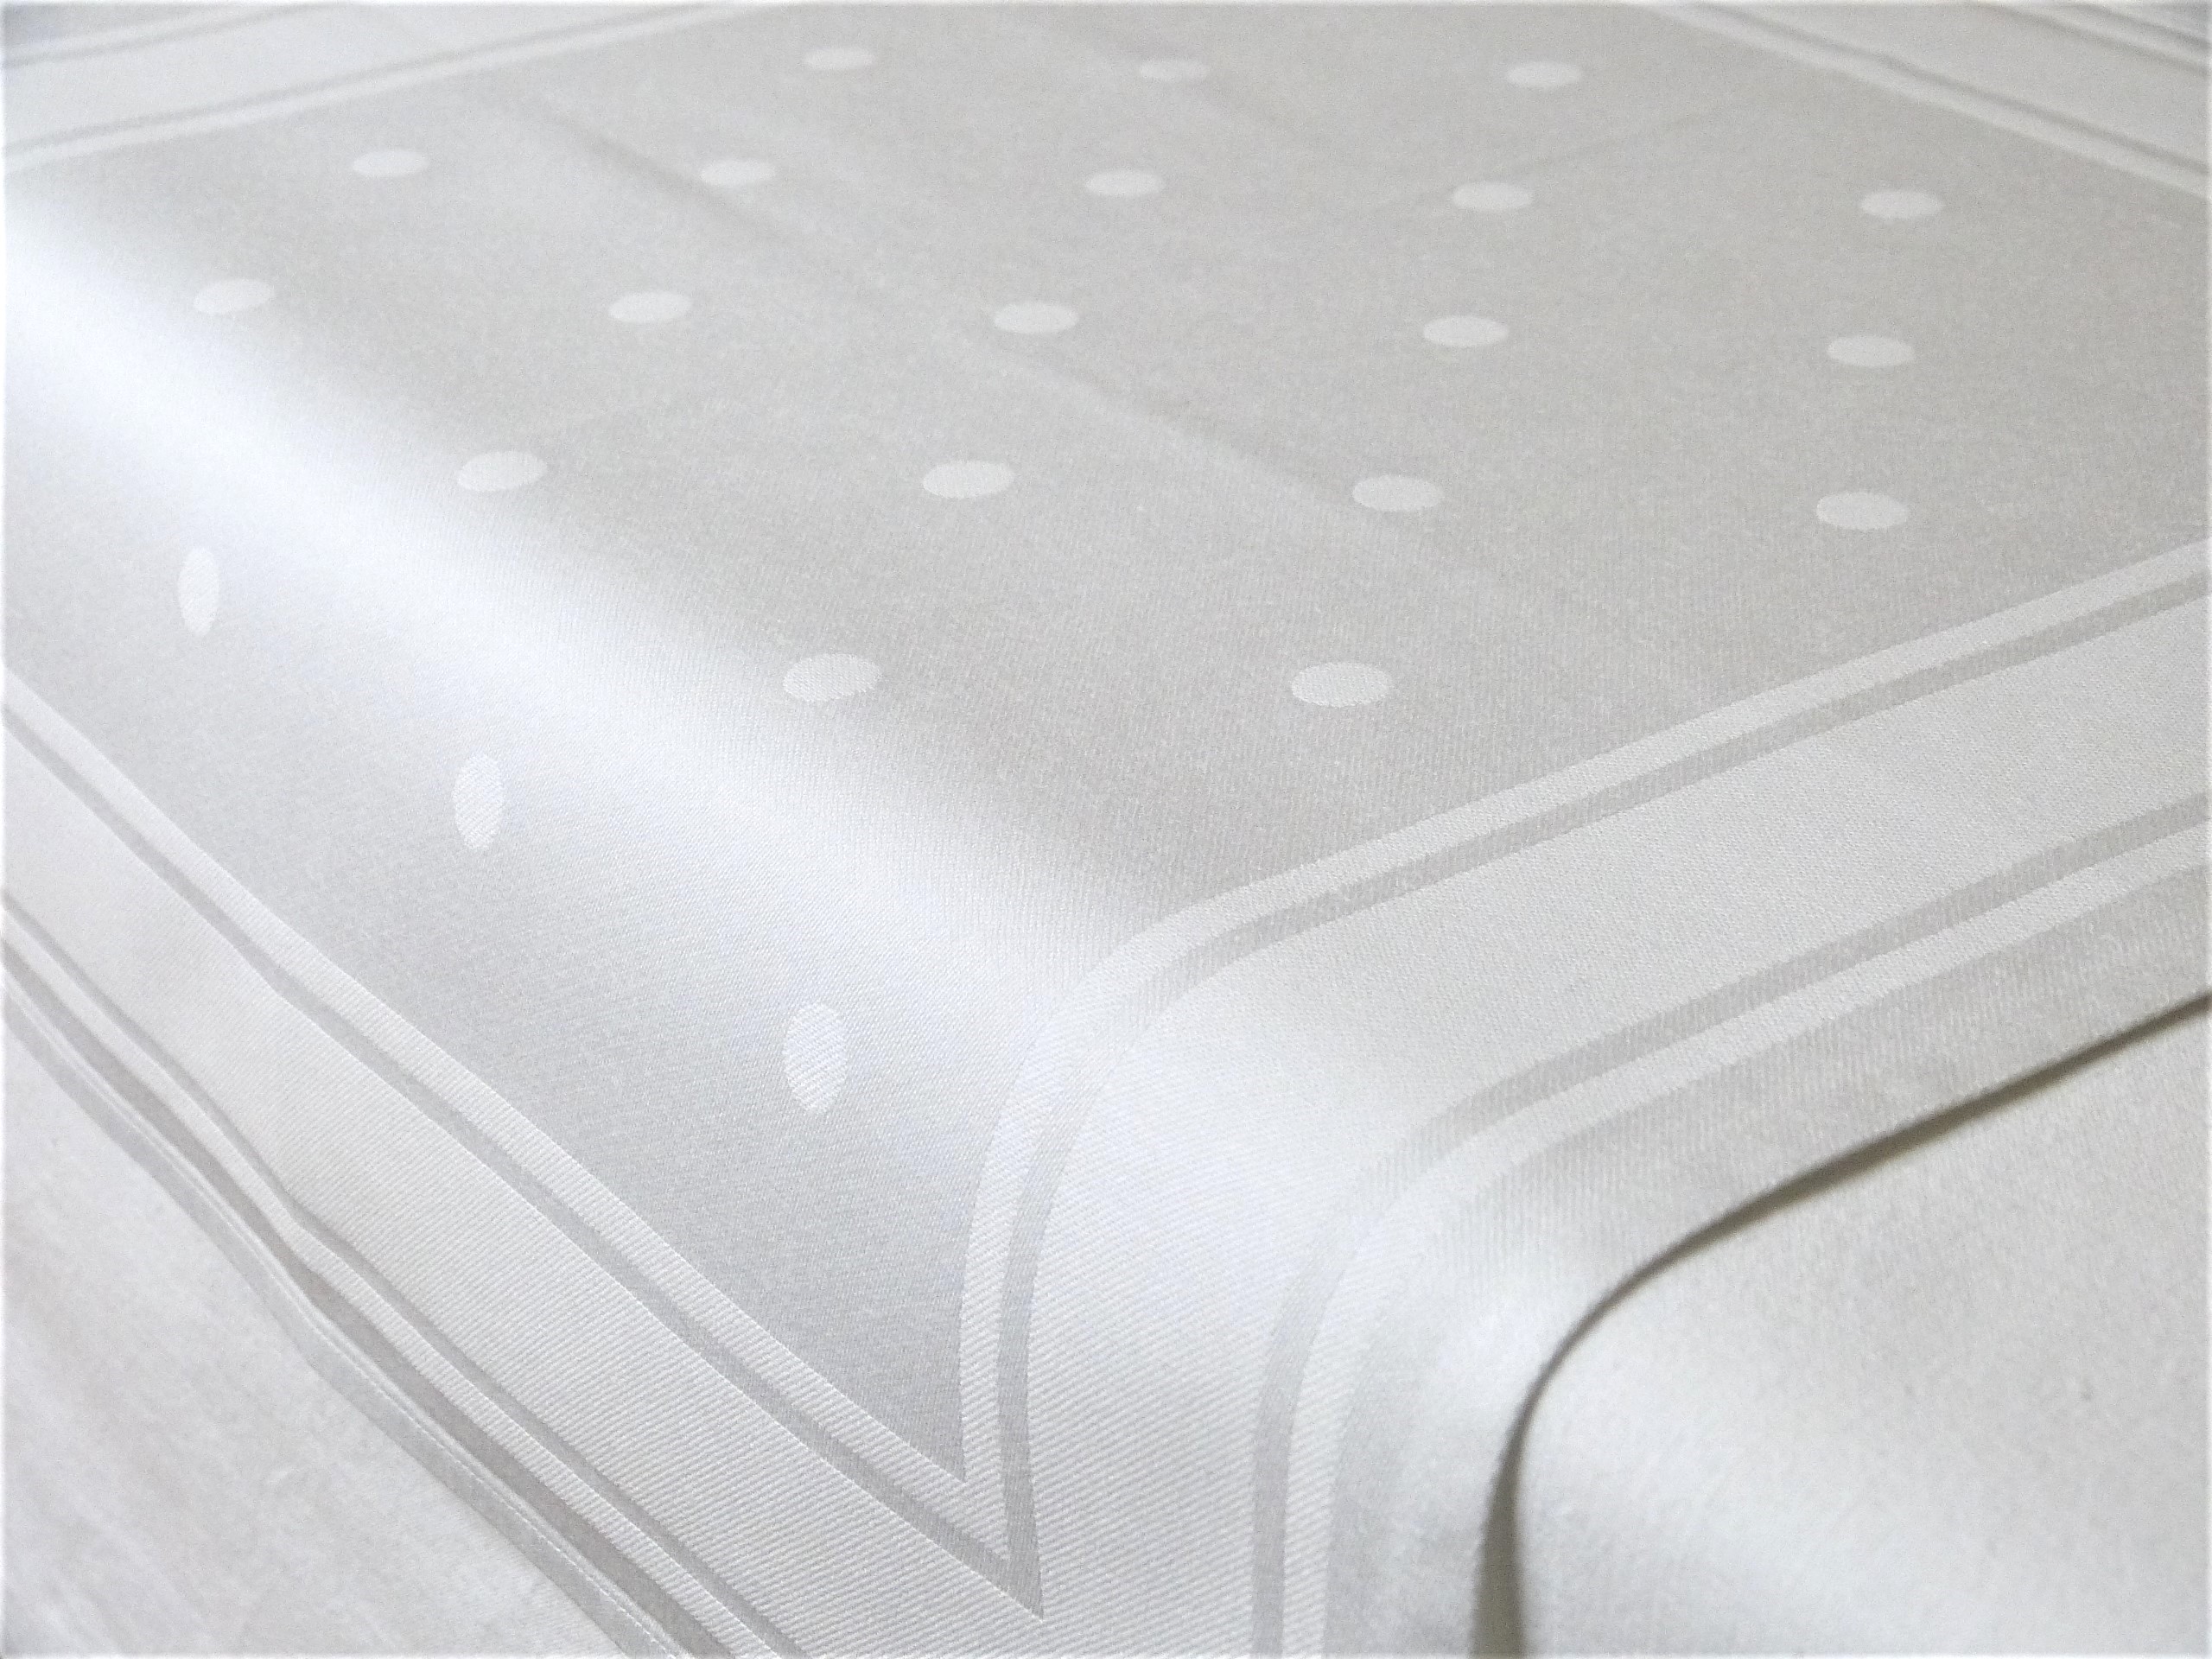 Antike Serviette Punkte Baumwolldamast seidig glänzend weiß 48x48 cm